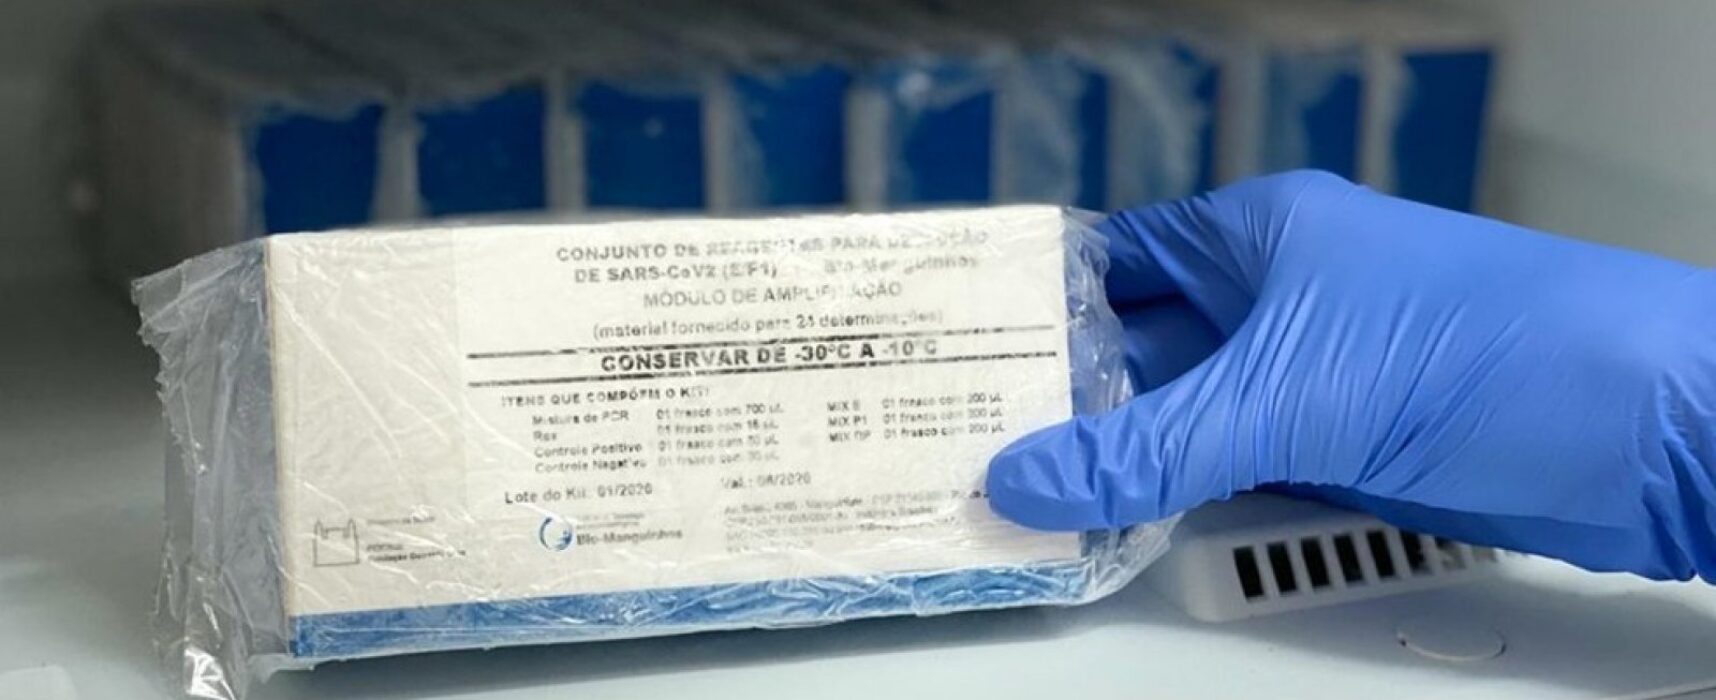 Bahia registra 4.283 novos casos de Covid-19 e mais 85 óbitos pela doença